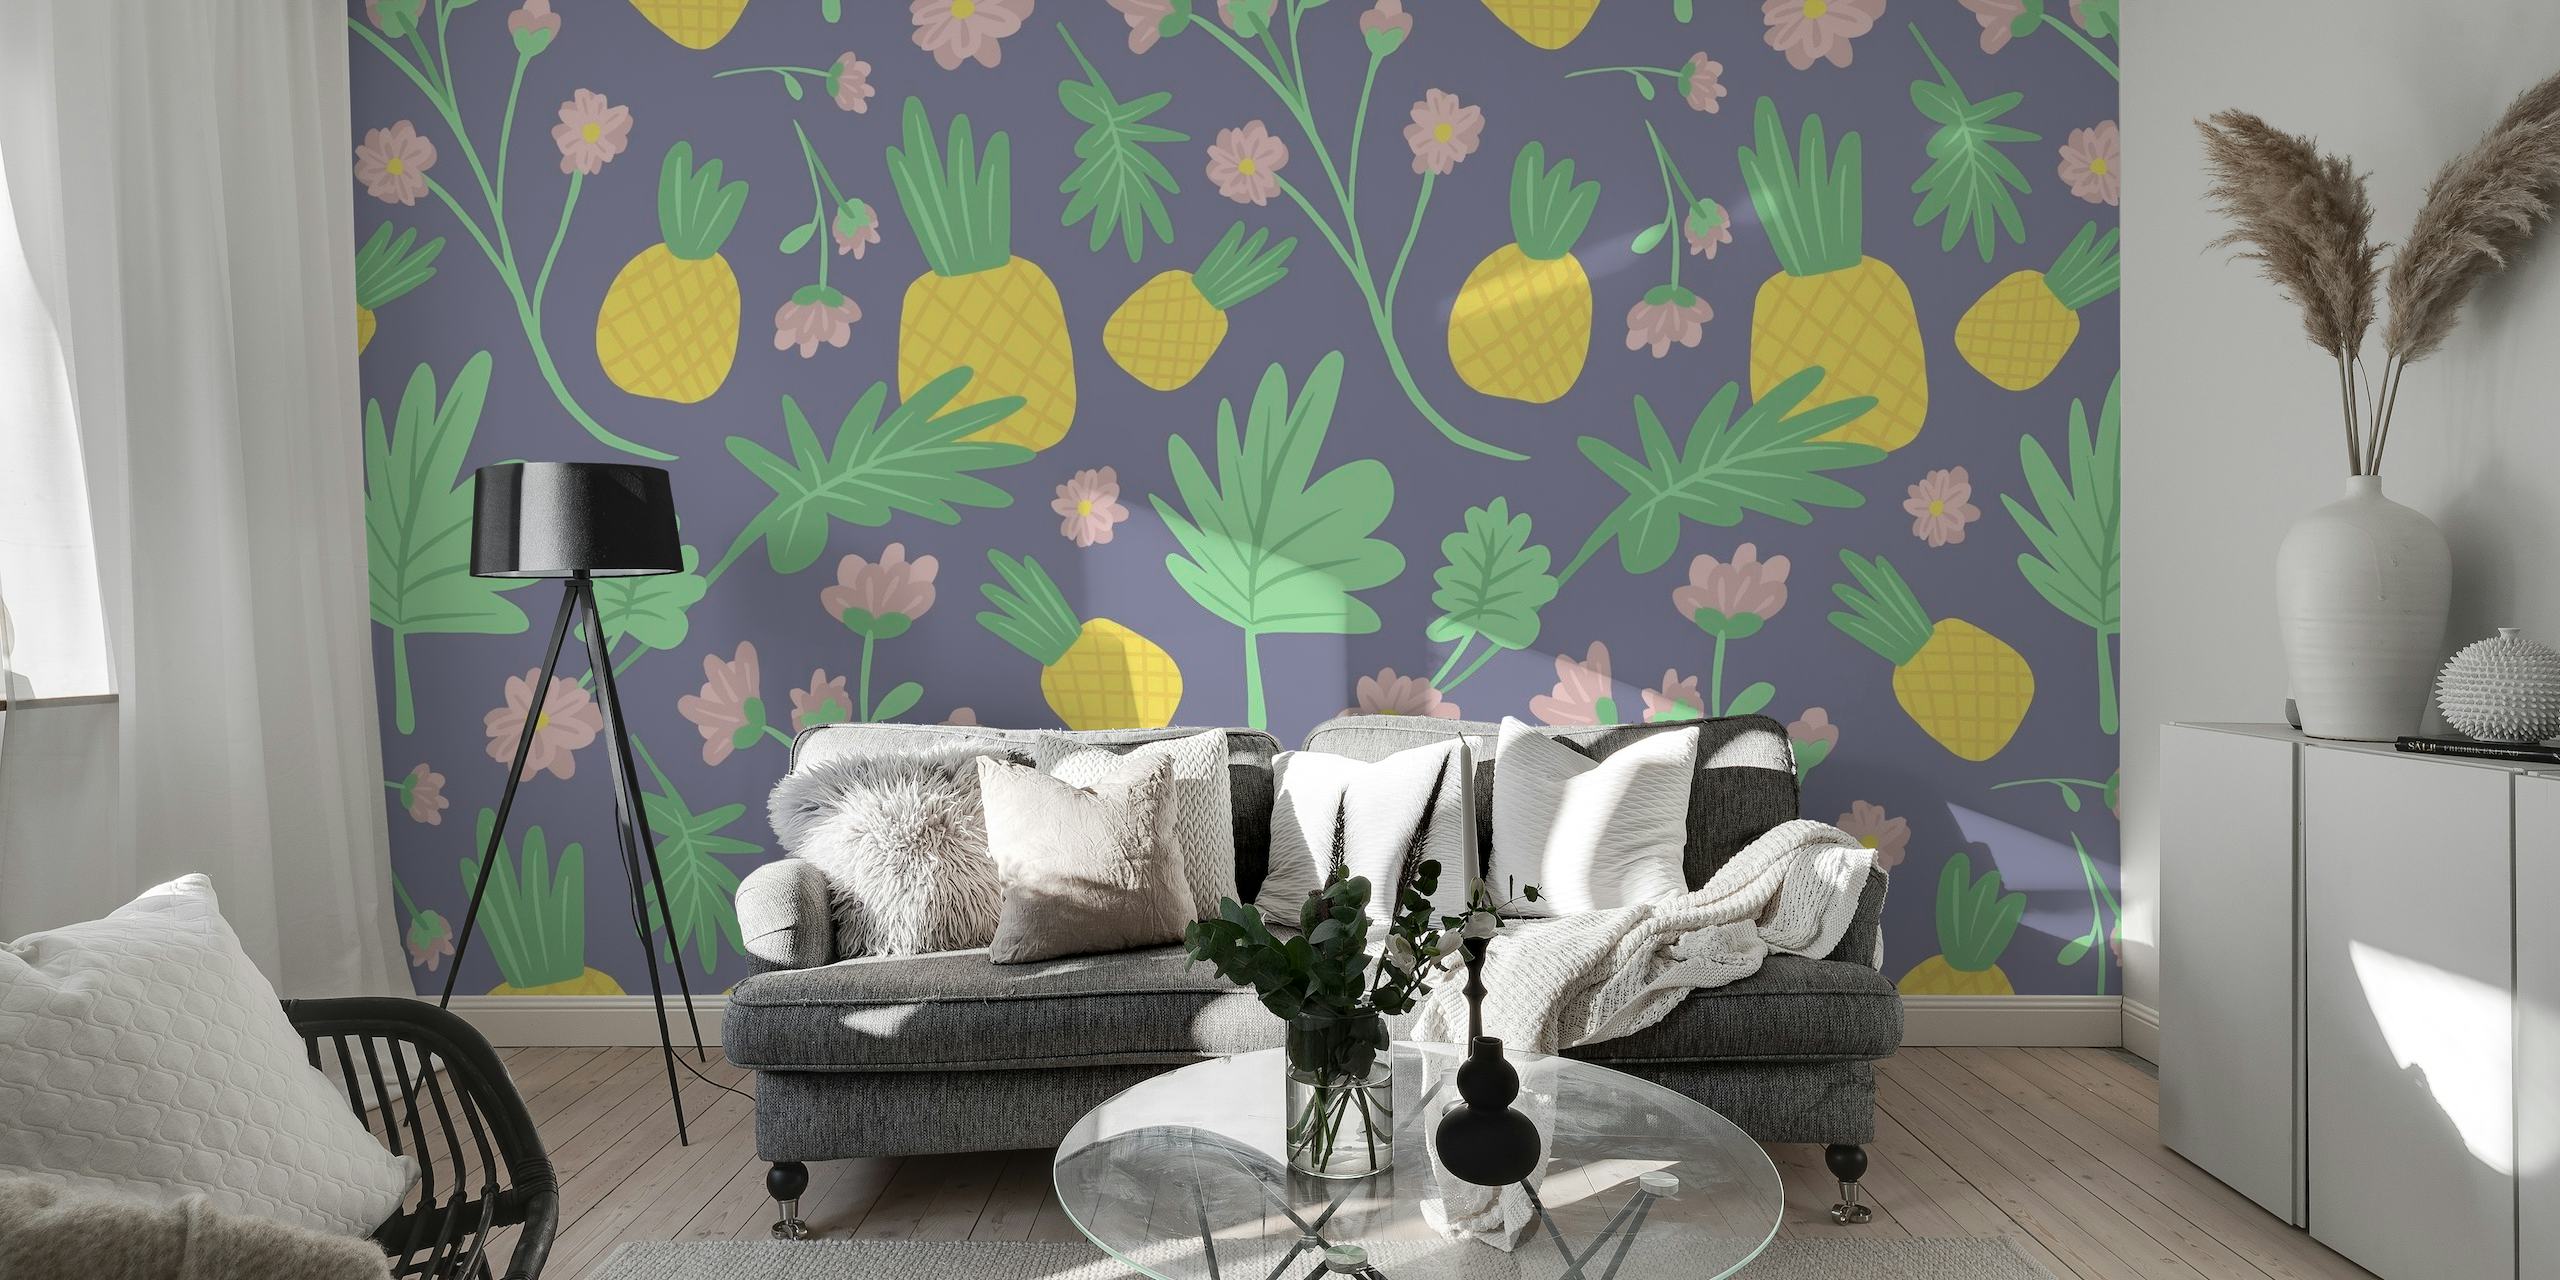 Fotomural vinílico de parede de abacaxi tropical com motivos de abacaxi e padrões florais em um fundo roxo